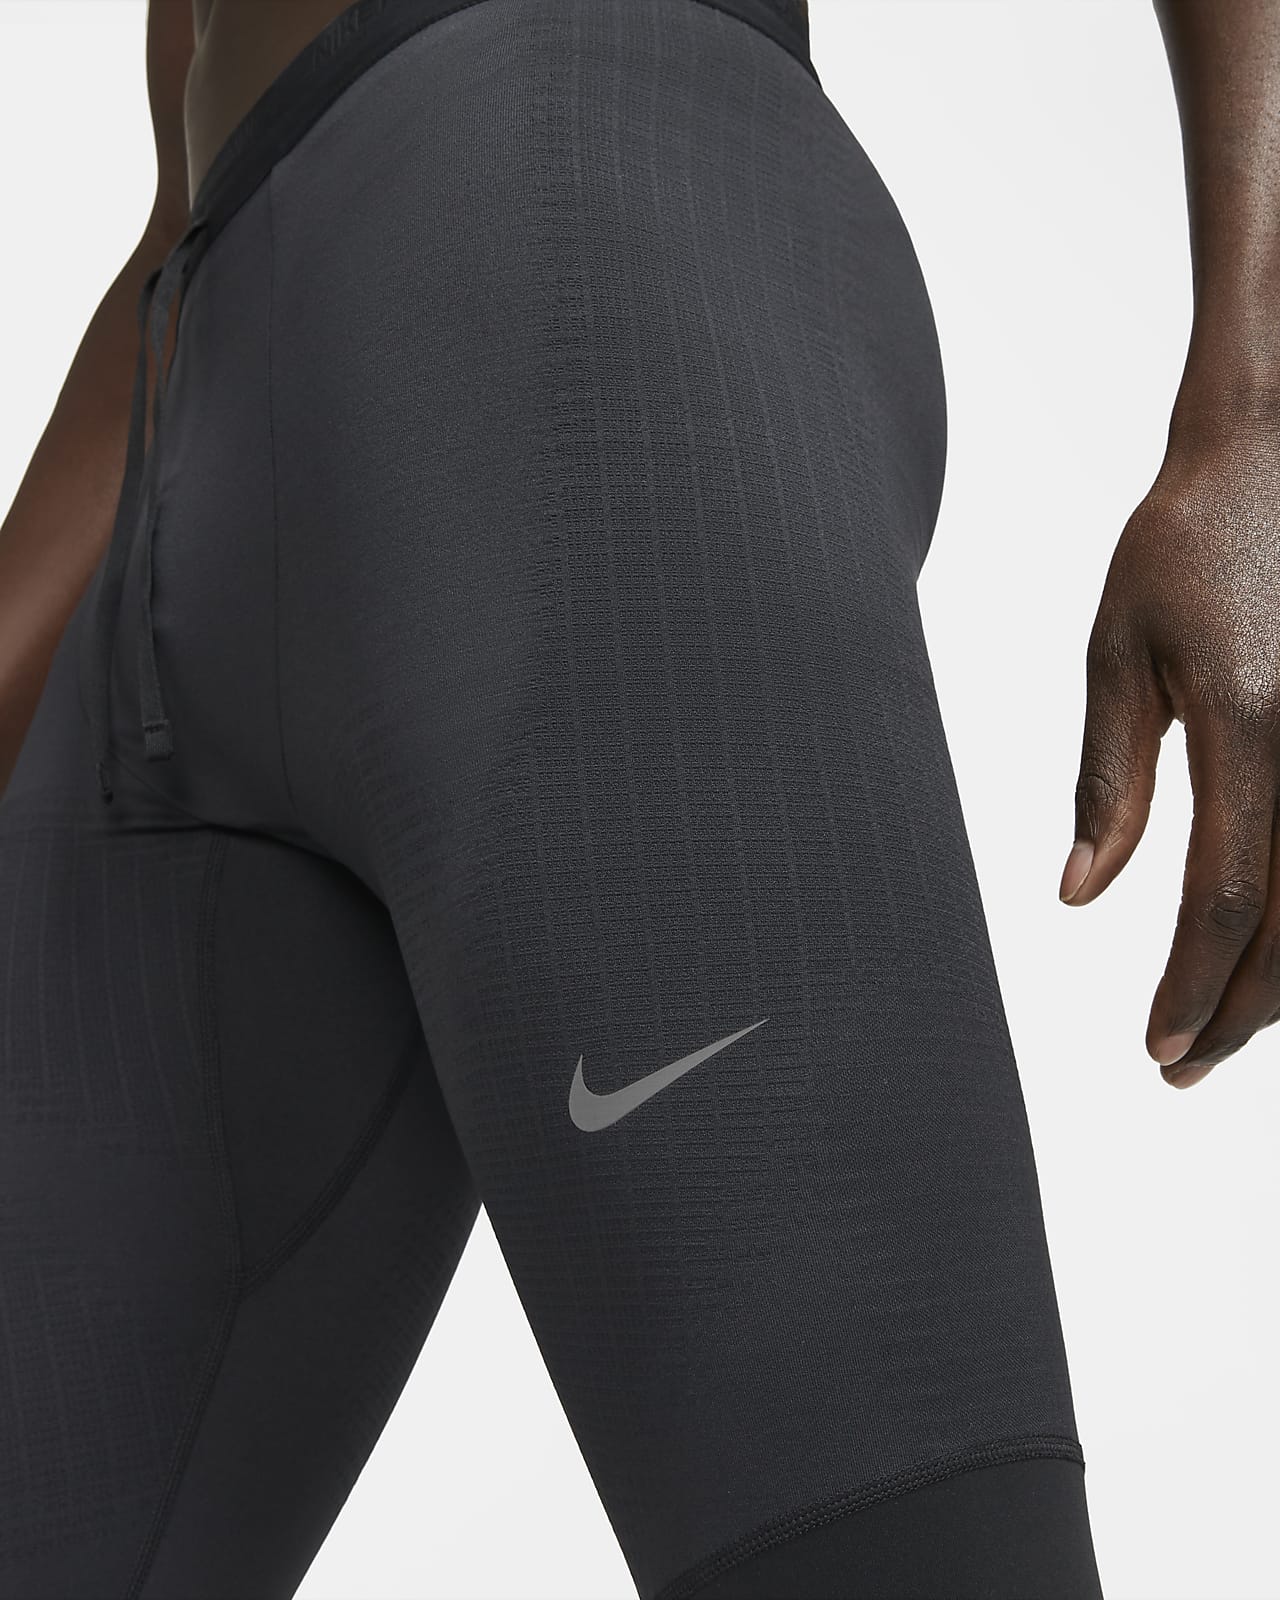 Leggings y mallas deportivas para hombre. Nike ES